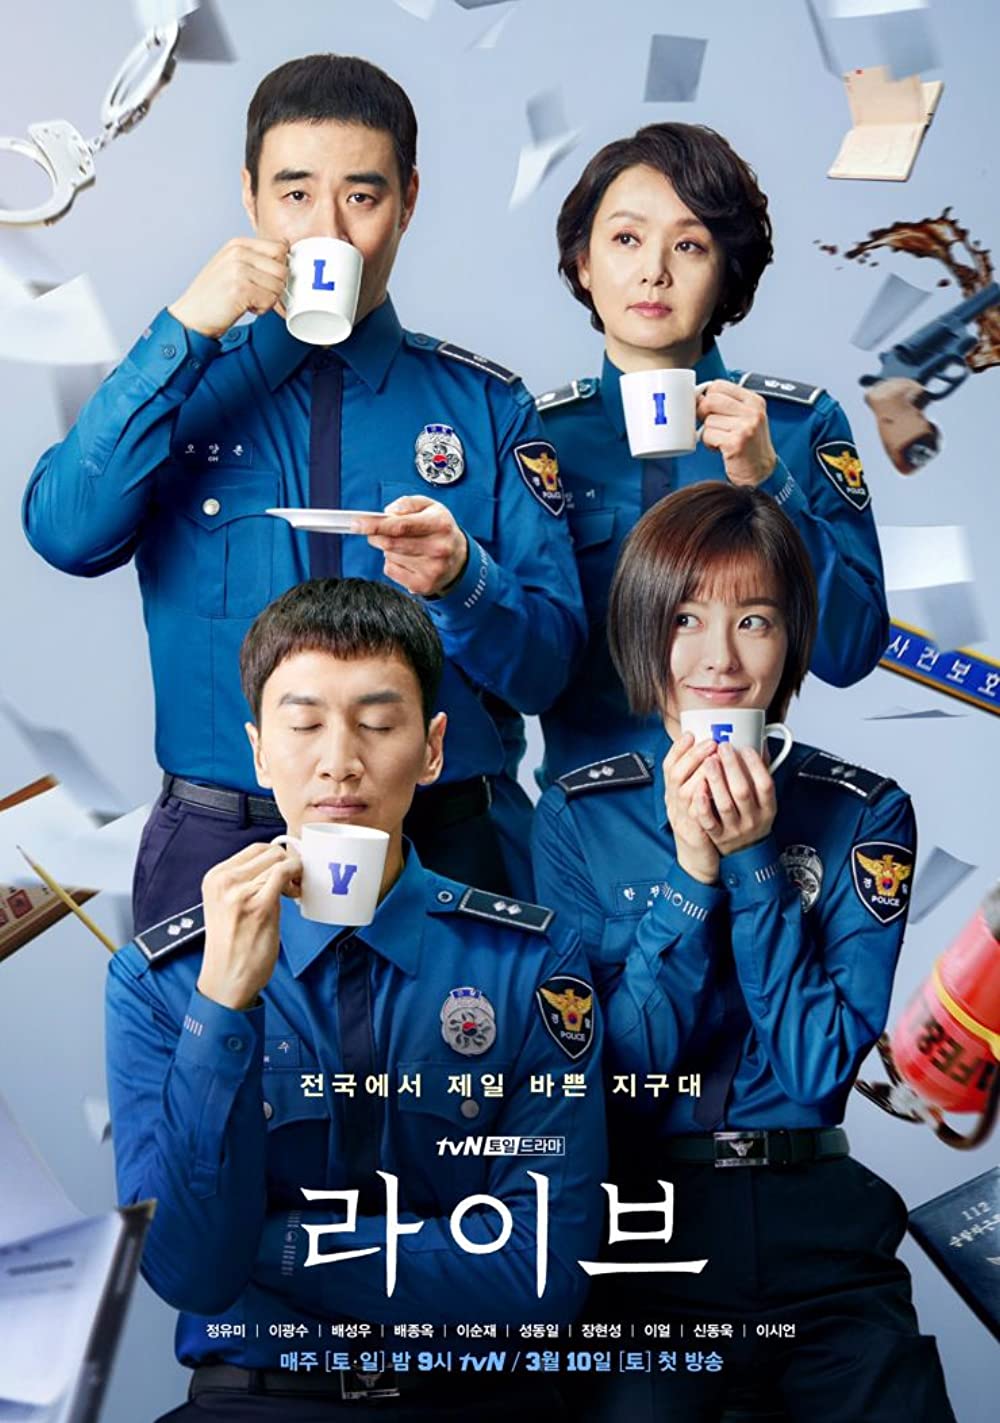 11 Drama Korea tentang polisi perempuan, tak takut menantang kejahatan